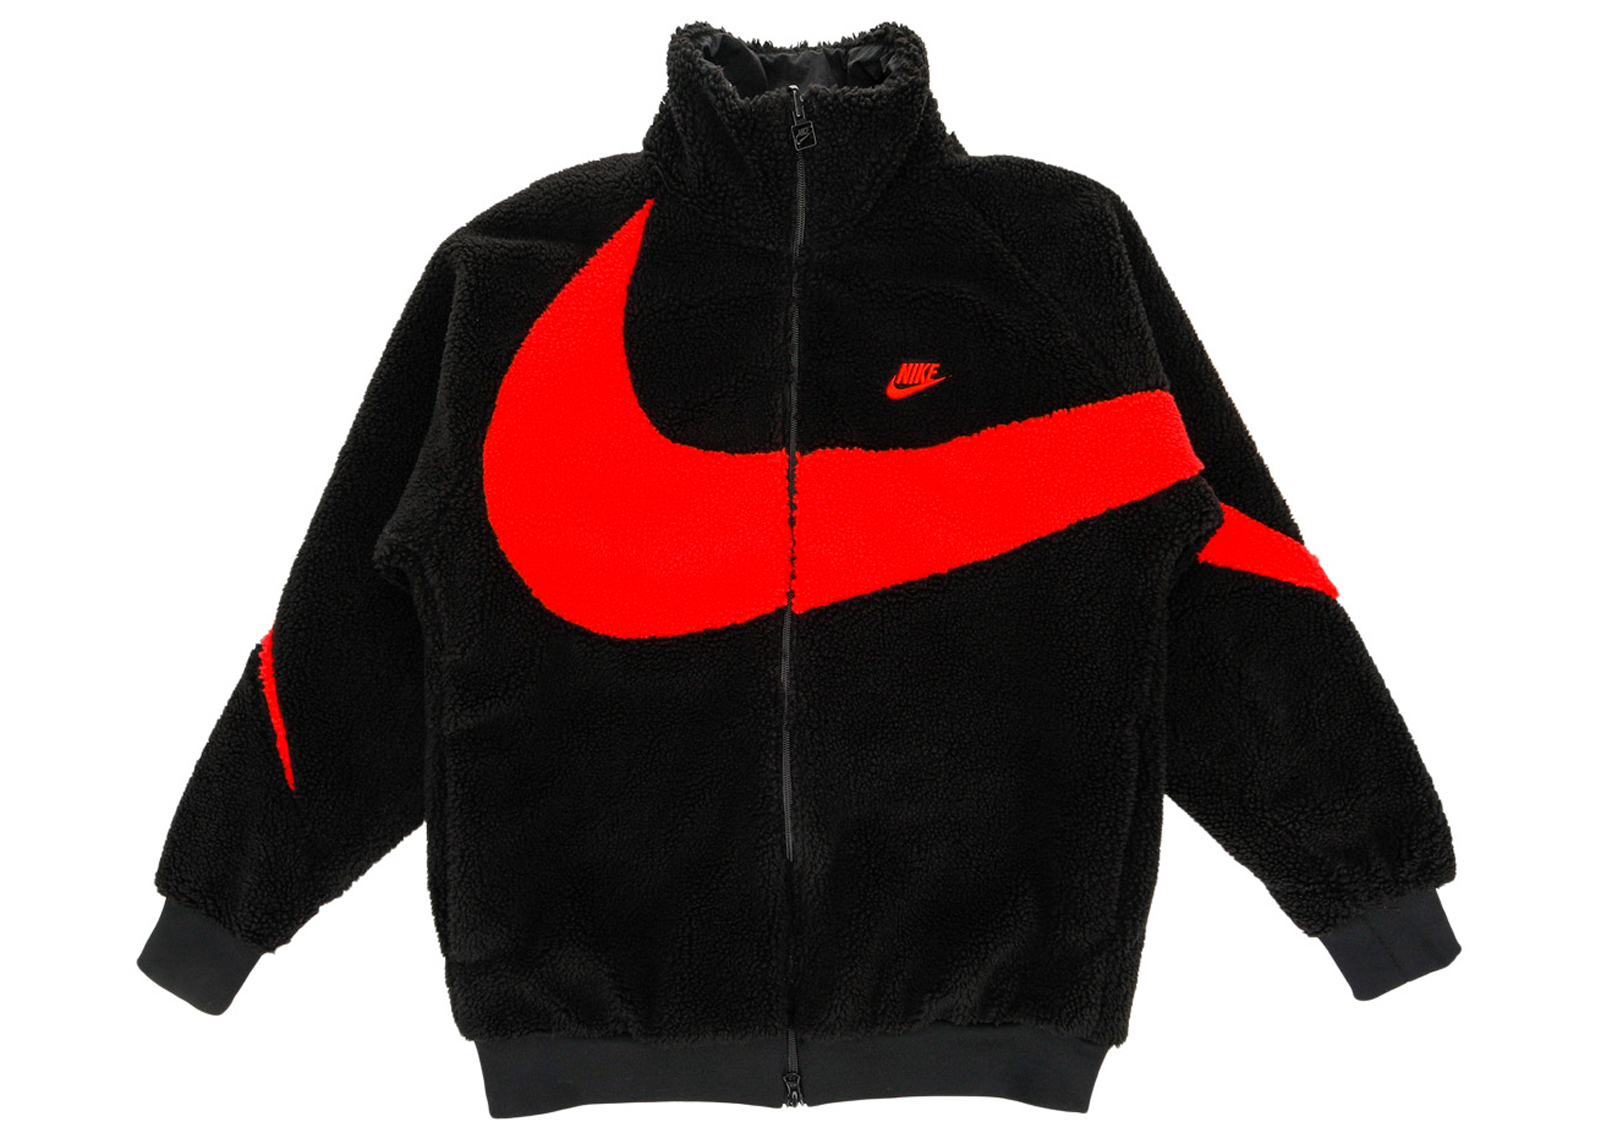 Nike Big Swoosh Reversible Boa Jacket (Asia Sizing) Black Chili 